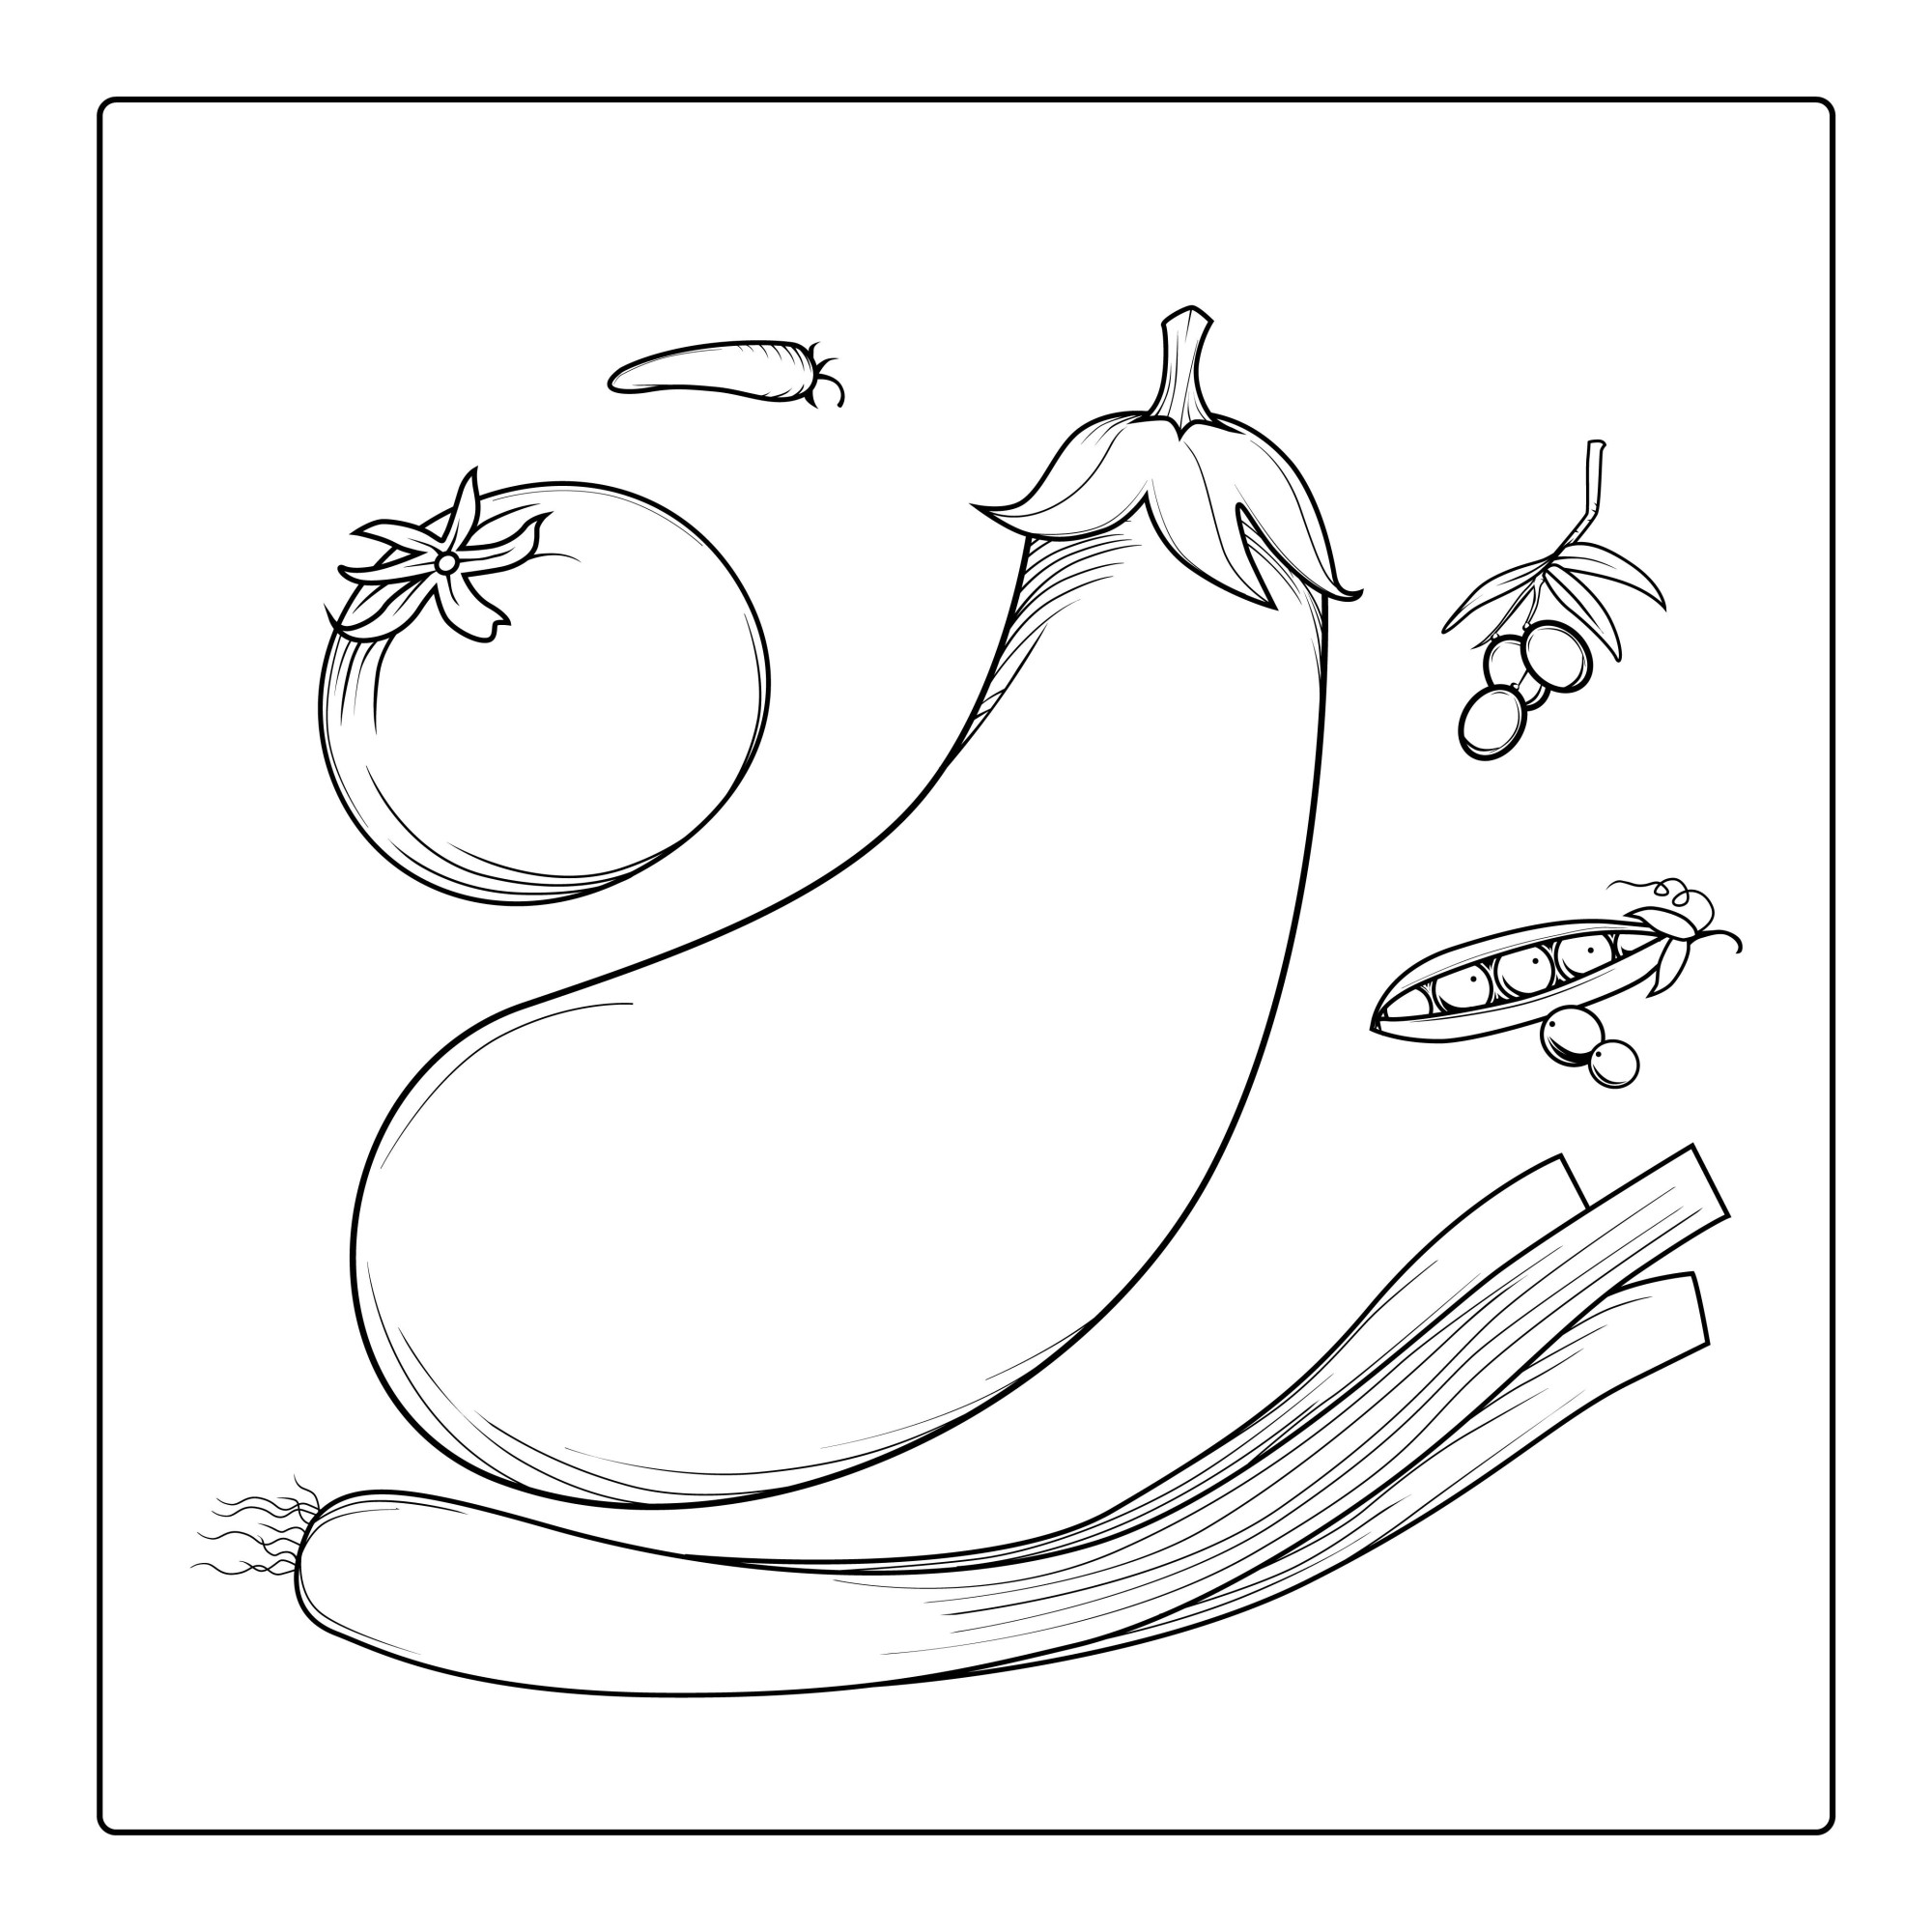 Раскраска для детей: баклажан с помидором, луком и горохом